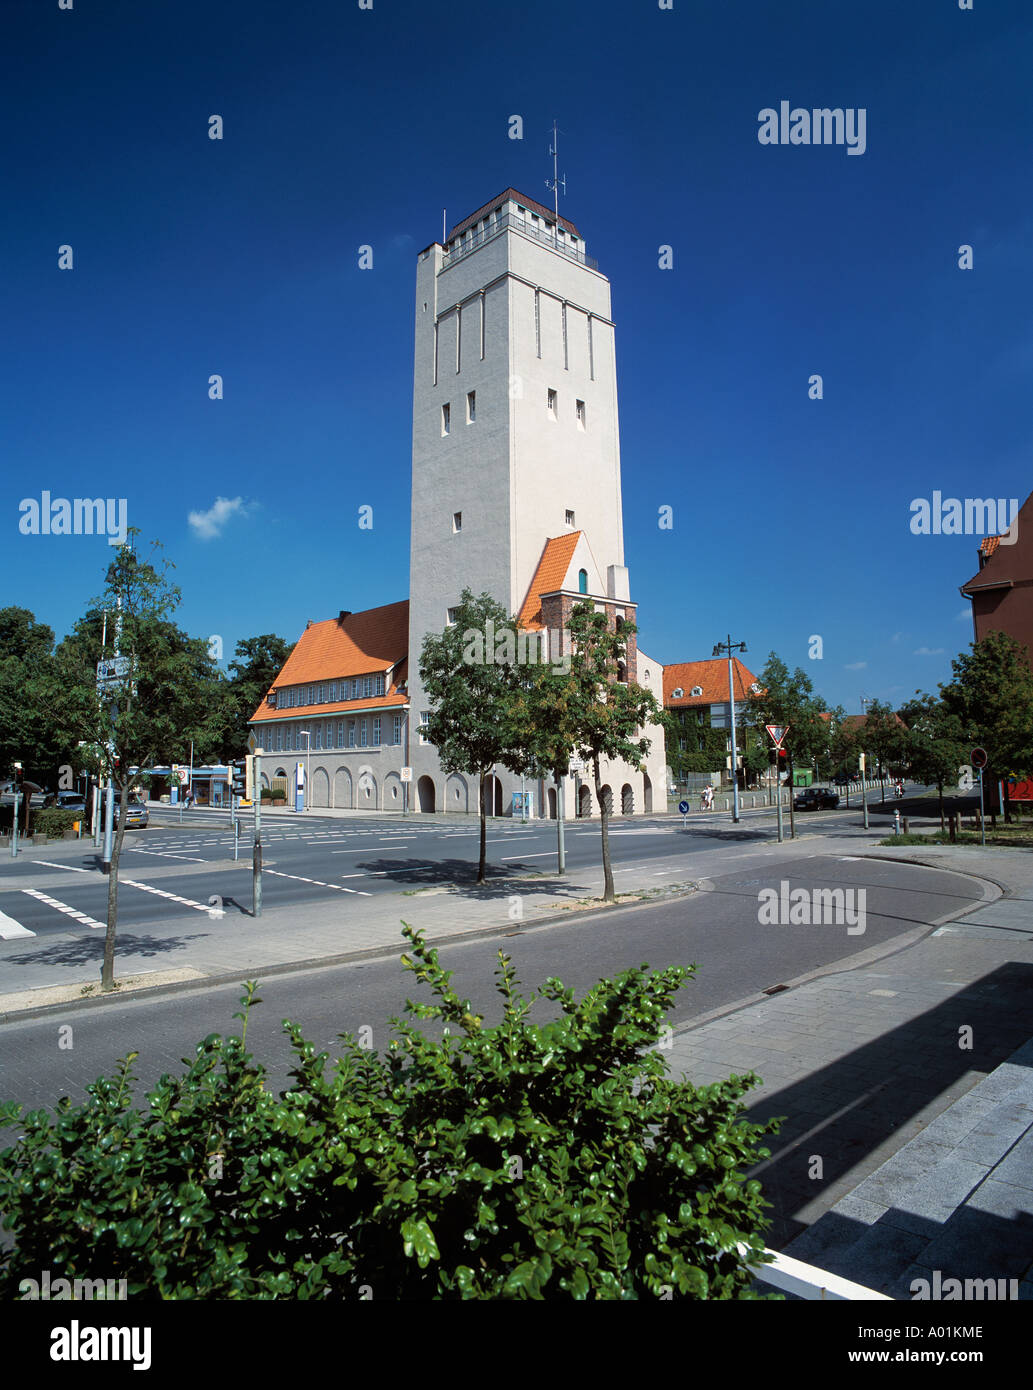 Wasserturm und Rathaus, Jugendstil, Delmenhorst, Oldenburger Land, Niedersachsen Banque D'Images